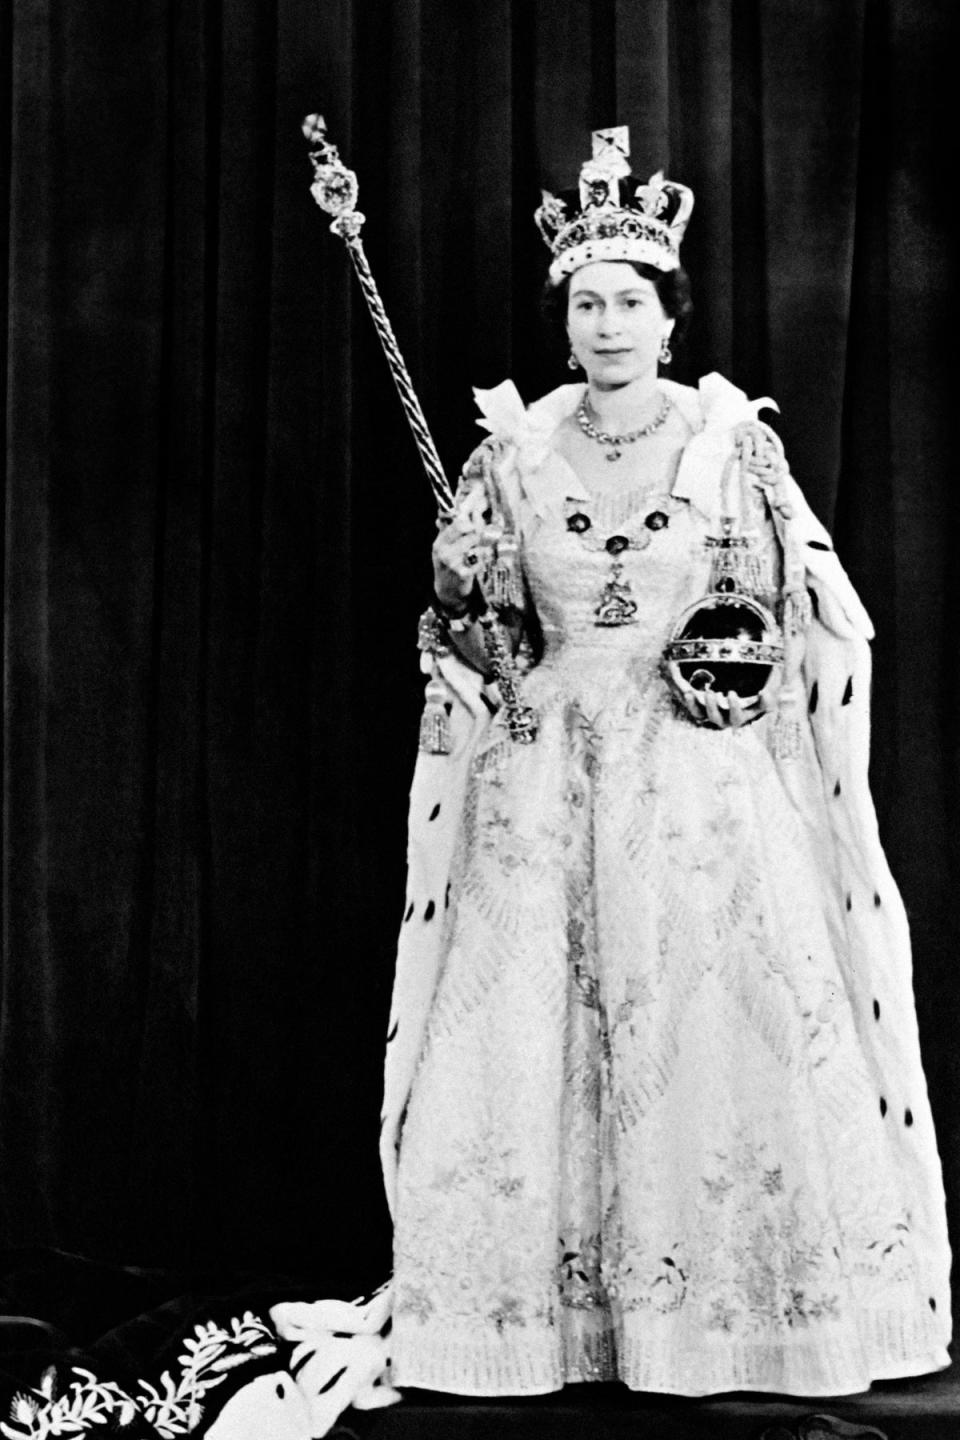 Queen Elizabeth II on her coronation day in June 1953 (AFP via Getty Images)